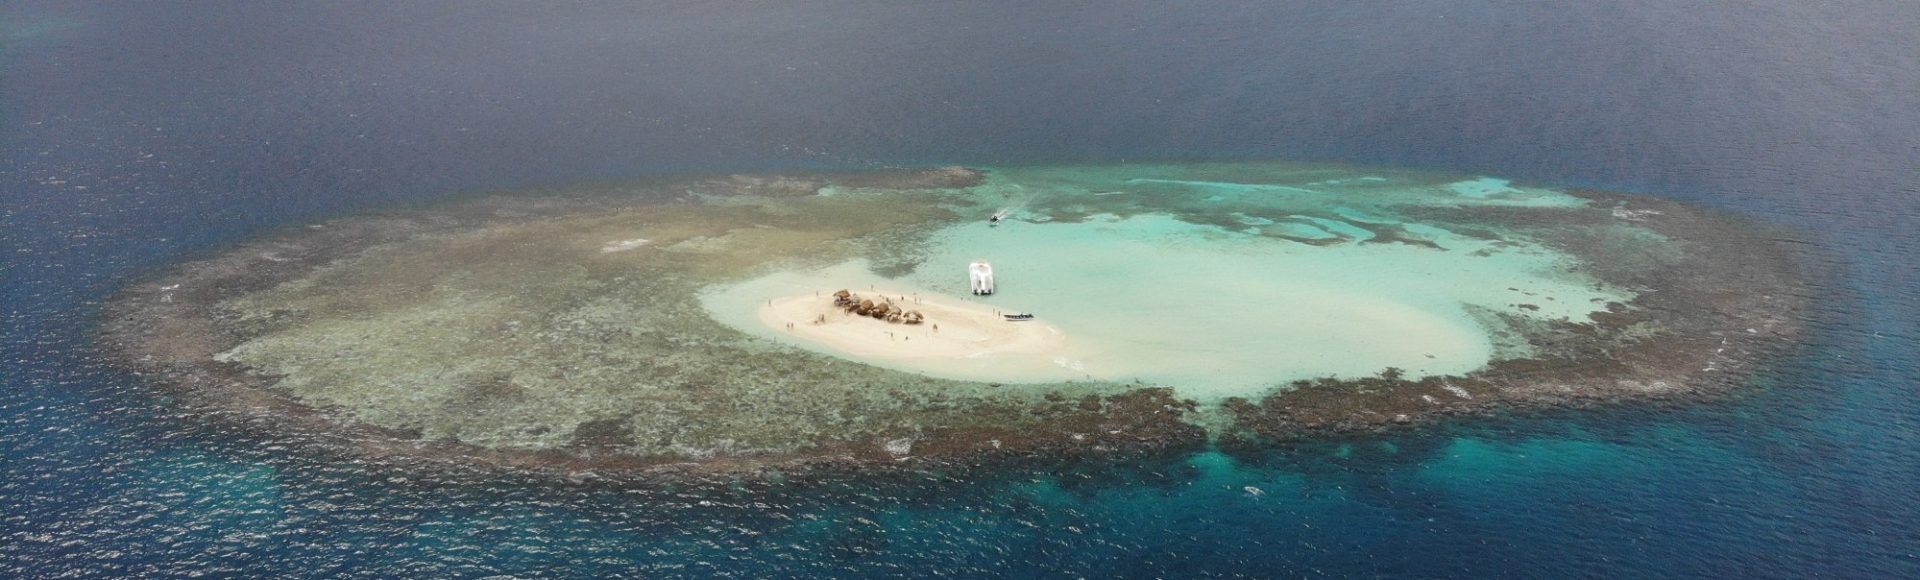 Cayo arena, czyli piaszczysta wyspa jak z bajki.